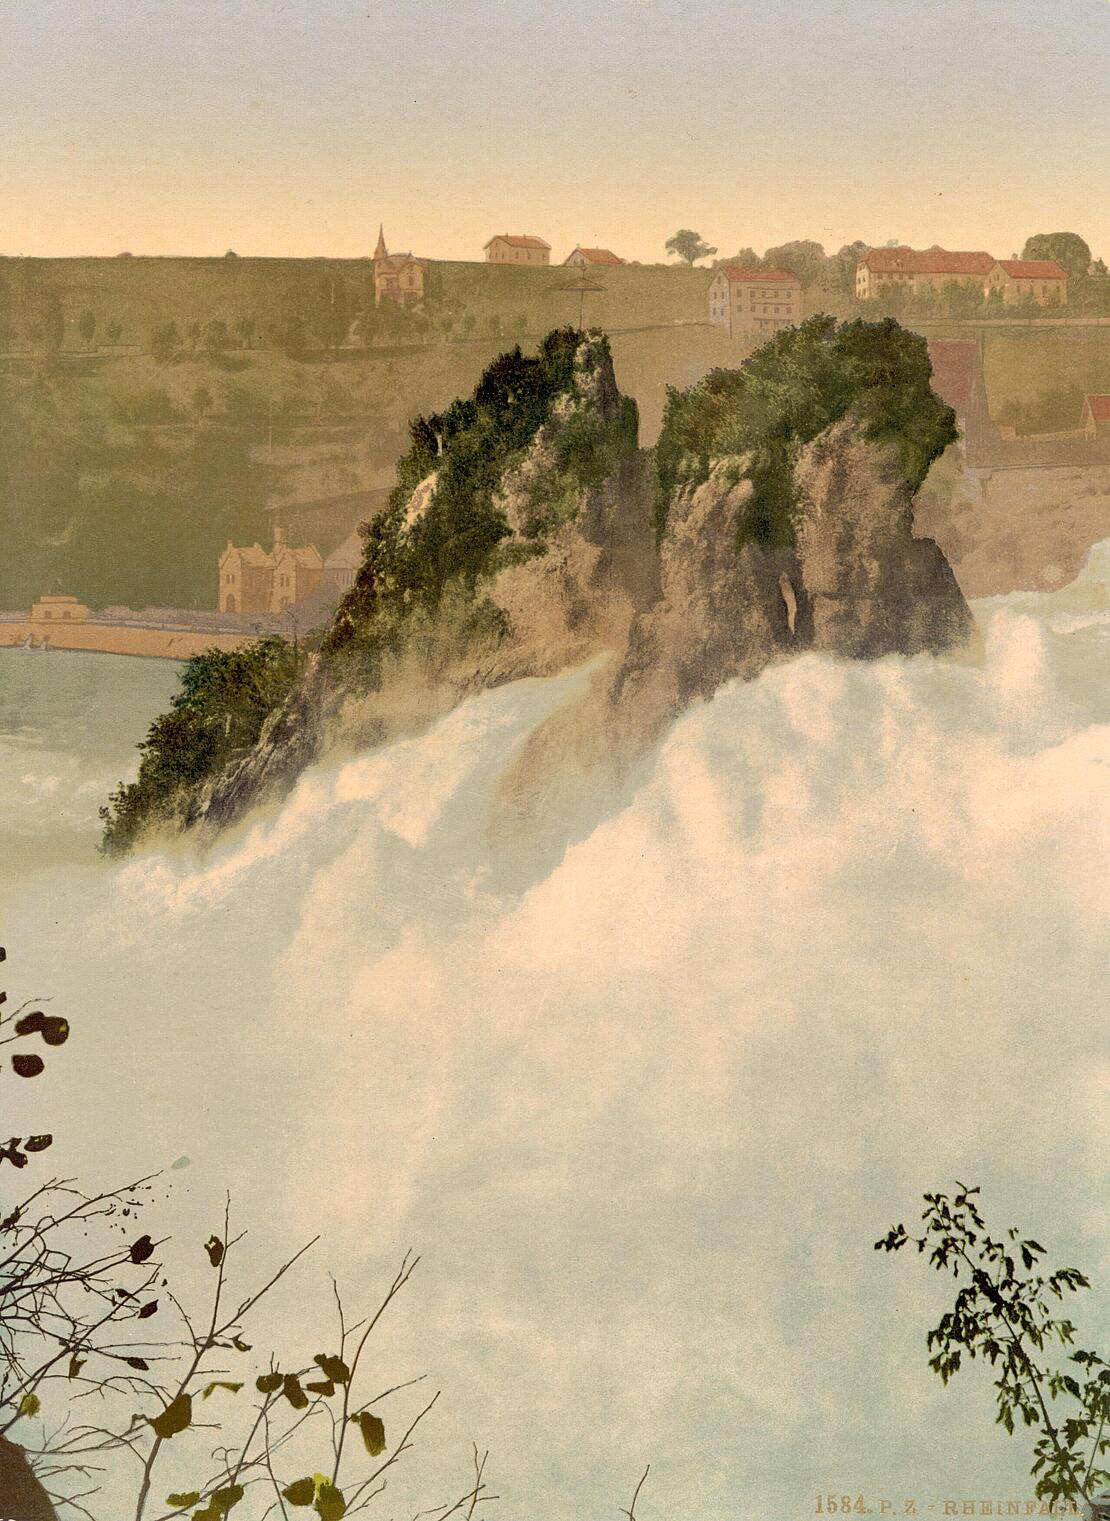 Historische Farbfotografie zeigt den Rheinfall bei Schaffhausen: Zwei Berggipfel schauen aus gischspritzendem Wasser hervor, im Hintergrund ist das Flussufer zu sehen